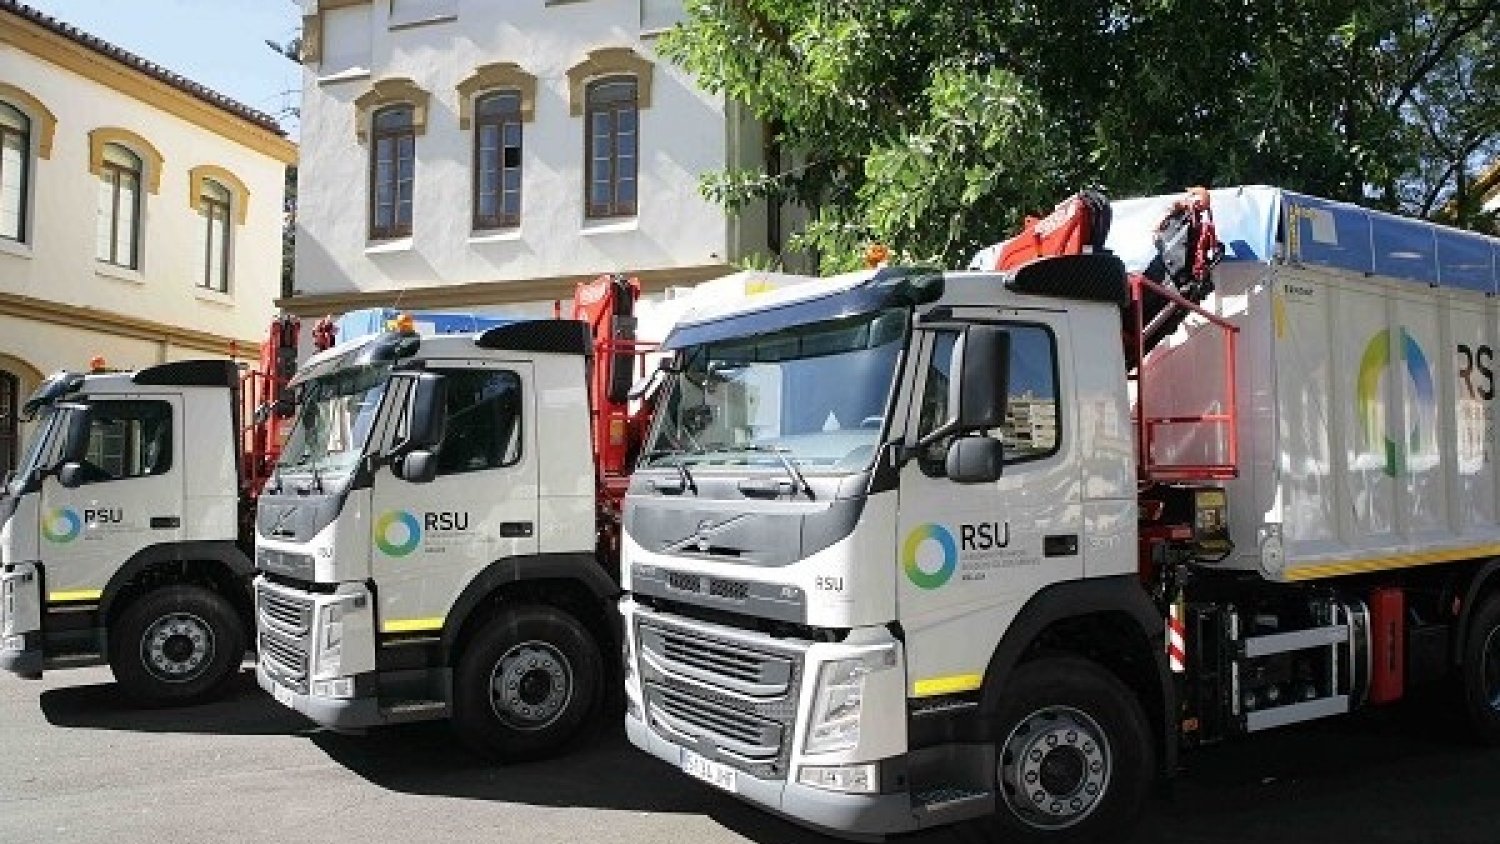 La Diputación recogerá en marzo casi 20.000 toneladas de residuos en los 91 municipios que gestiona